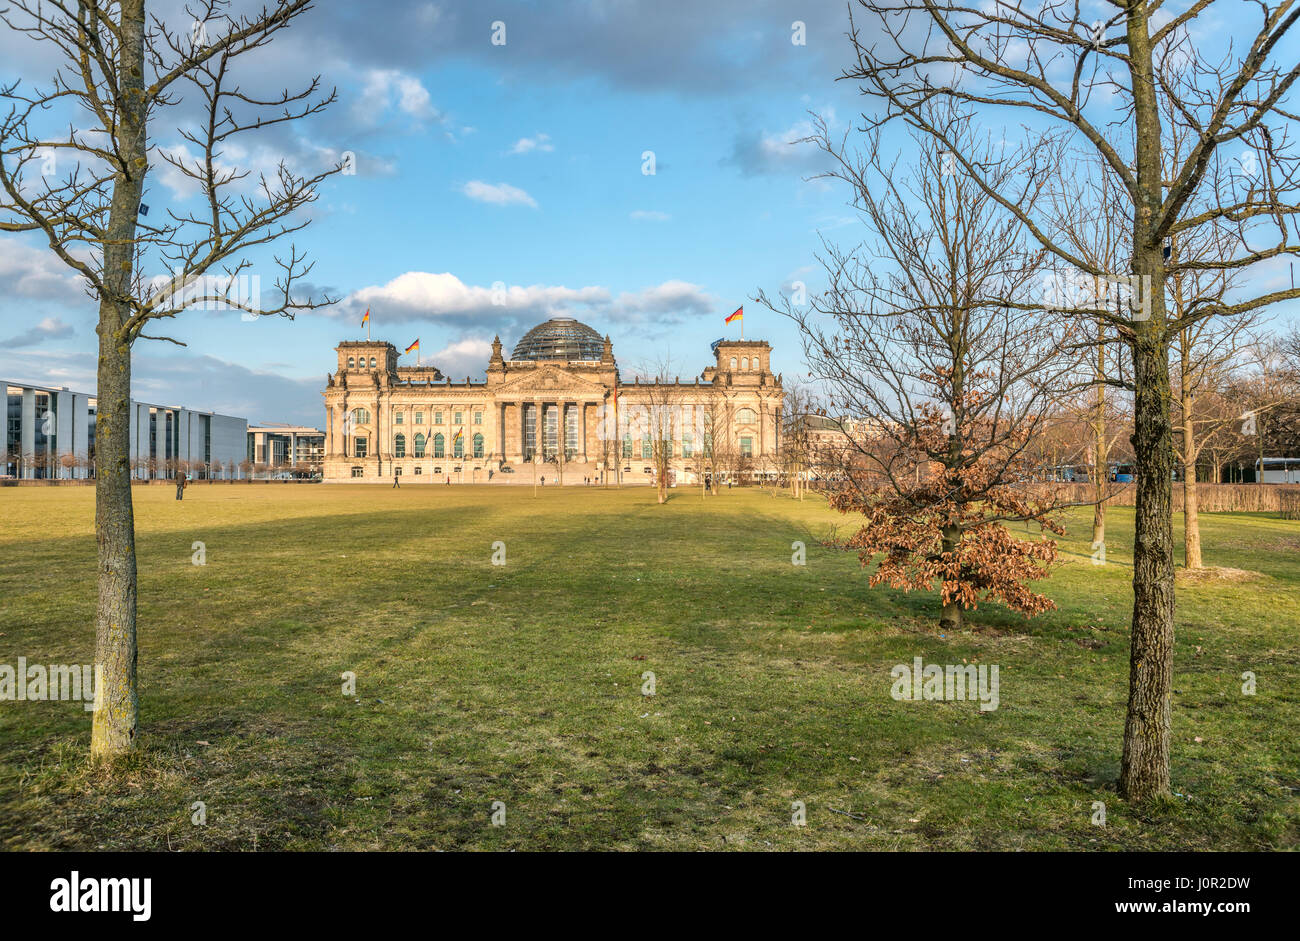 Parlement allemand Reichstag bâtiment dans le quartier gouvernemental de Berlin, Allemagne Banque D'Images